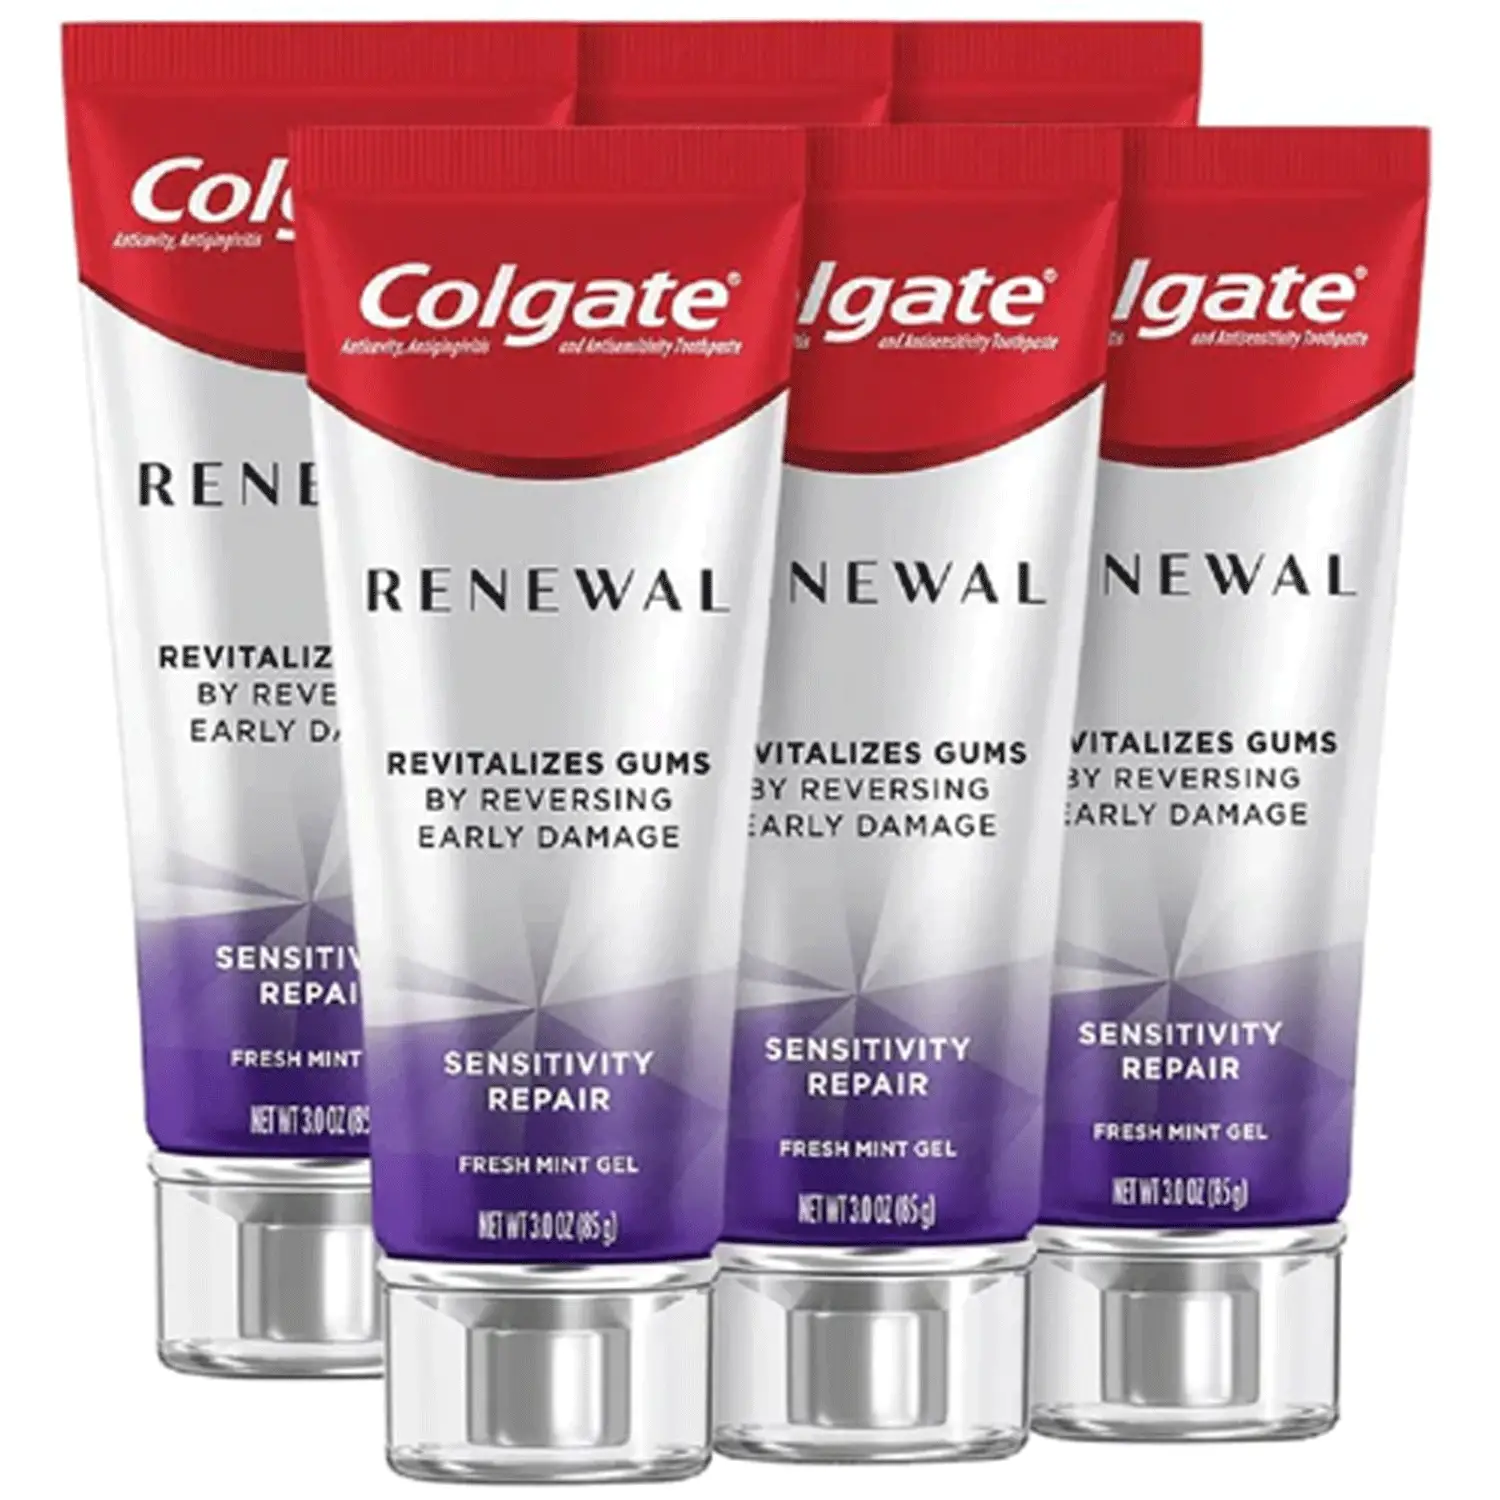 Colgate Renewal Sensitivity Repair Gel Toothpaste In Fresh Mint - 6 Pack